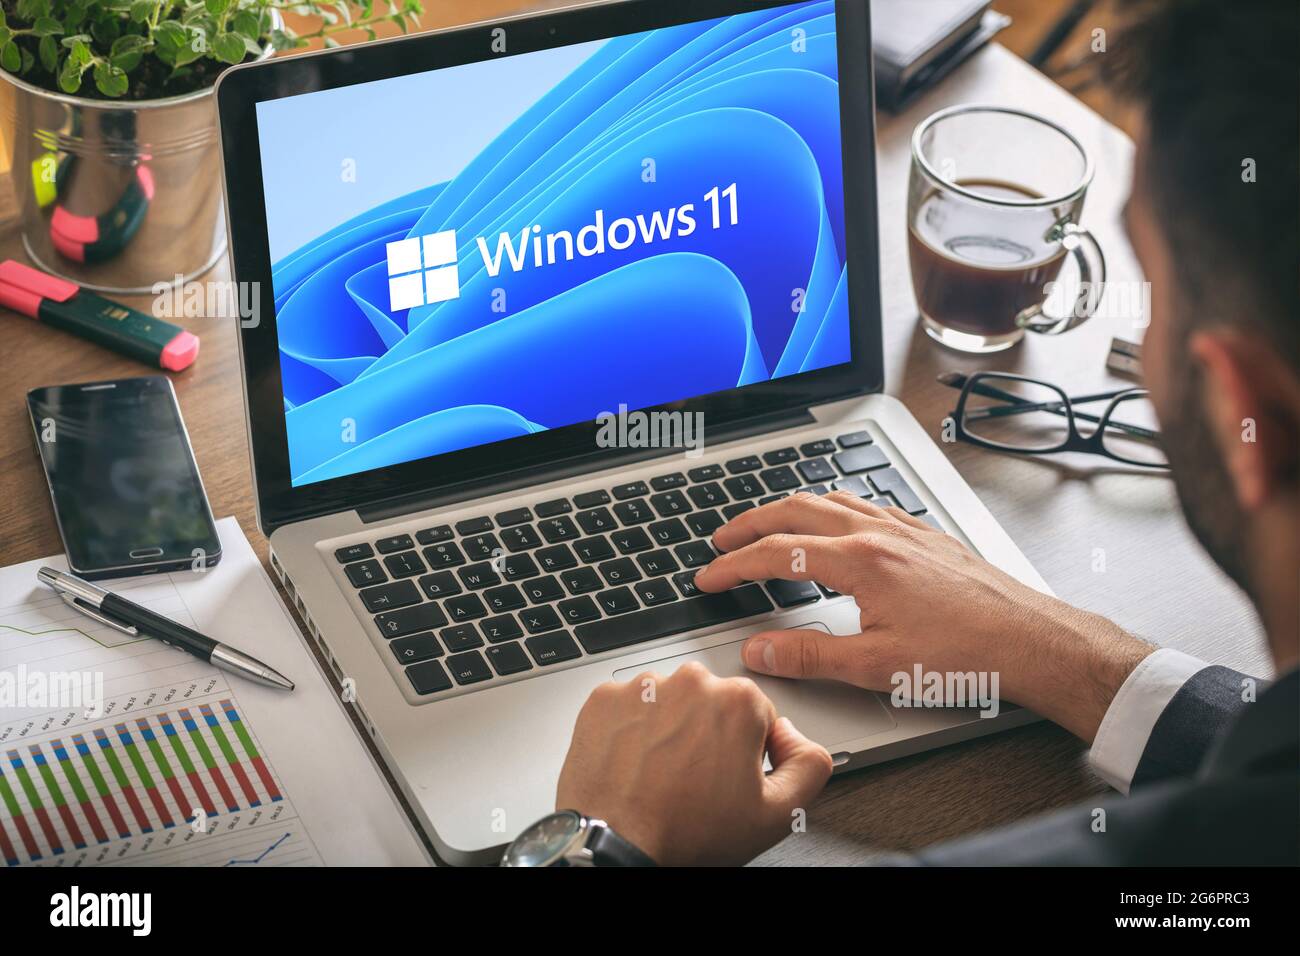 Griechenland Athen, Juli 8 2021. Mann arbeitet mit einem Laptop, Windows 11 neues Microsoft-Betriebssystem auf Computer-Display, Büro Schreibtisch Hintergrund. Stockfoto